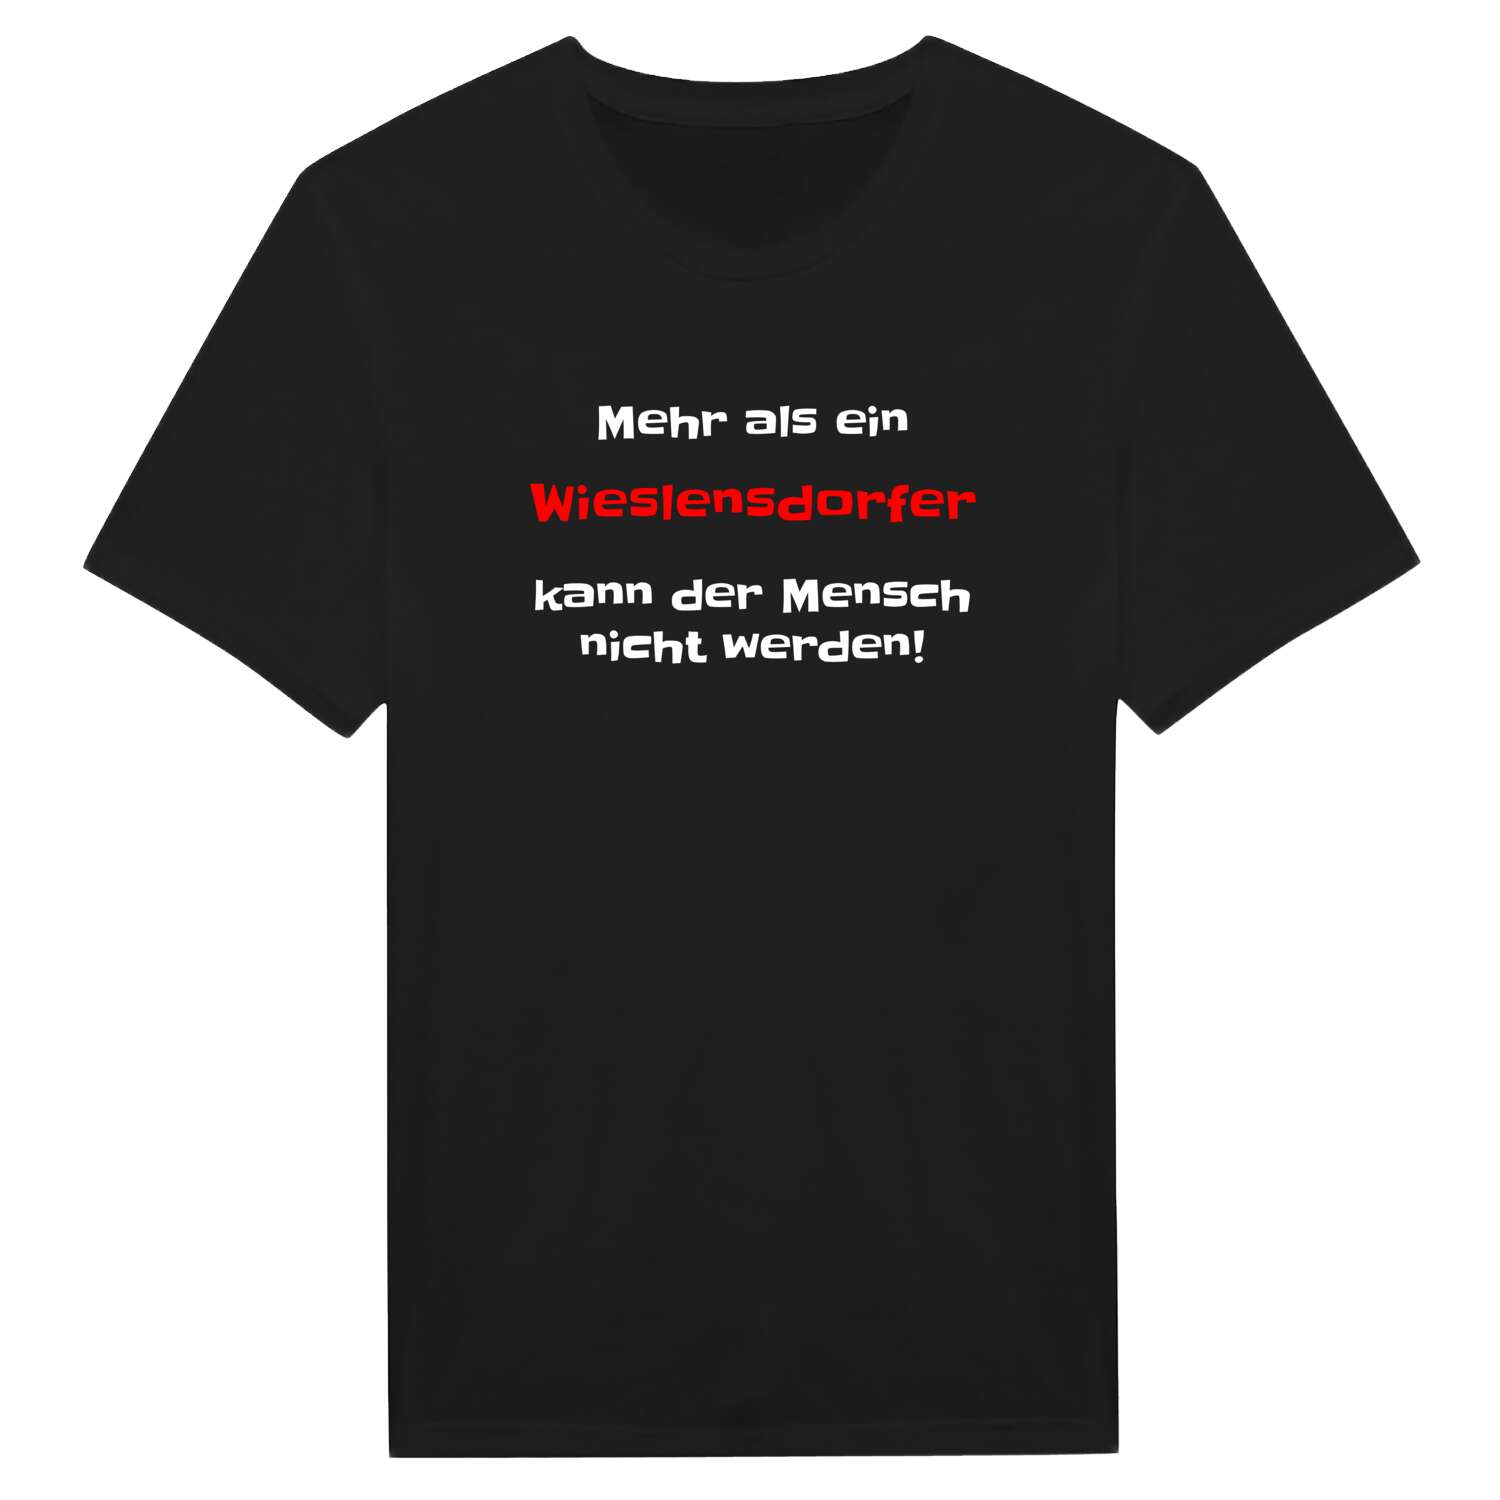 Wieslensdorf T-Shirt »Mehr als ein«